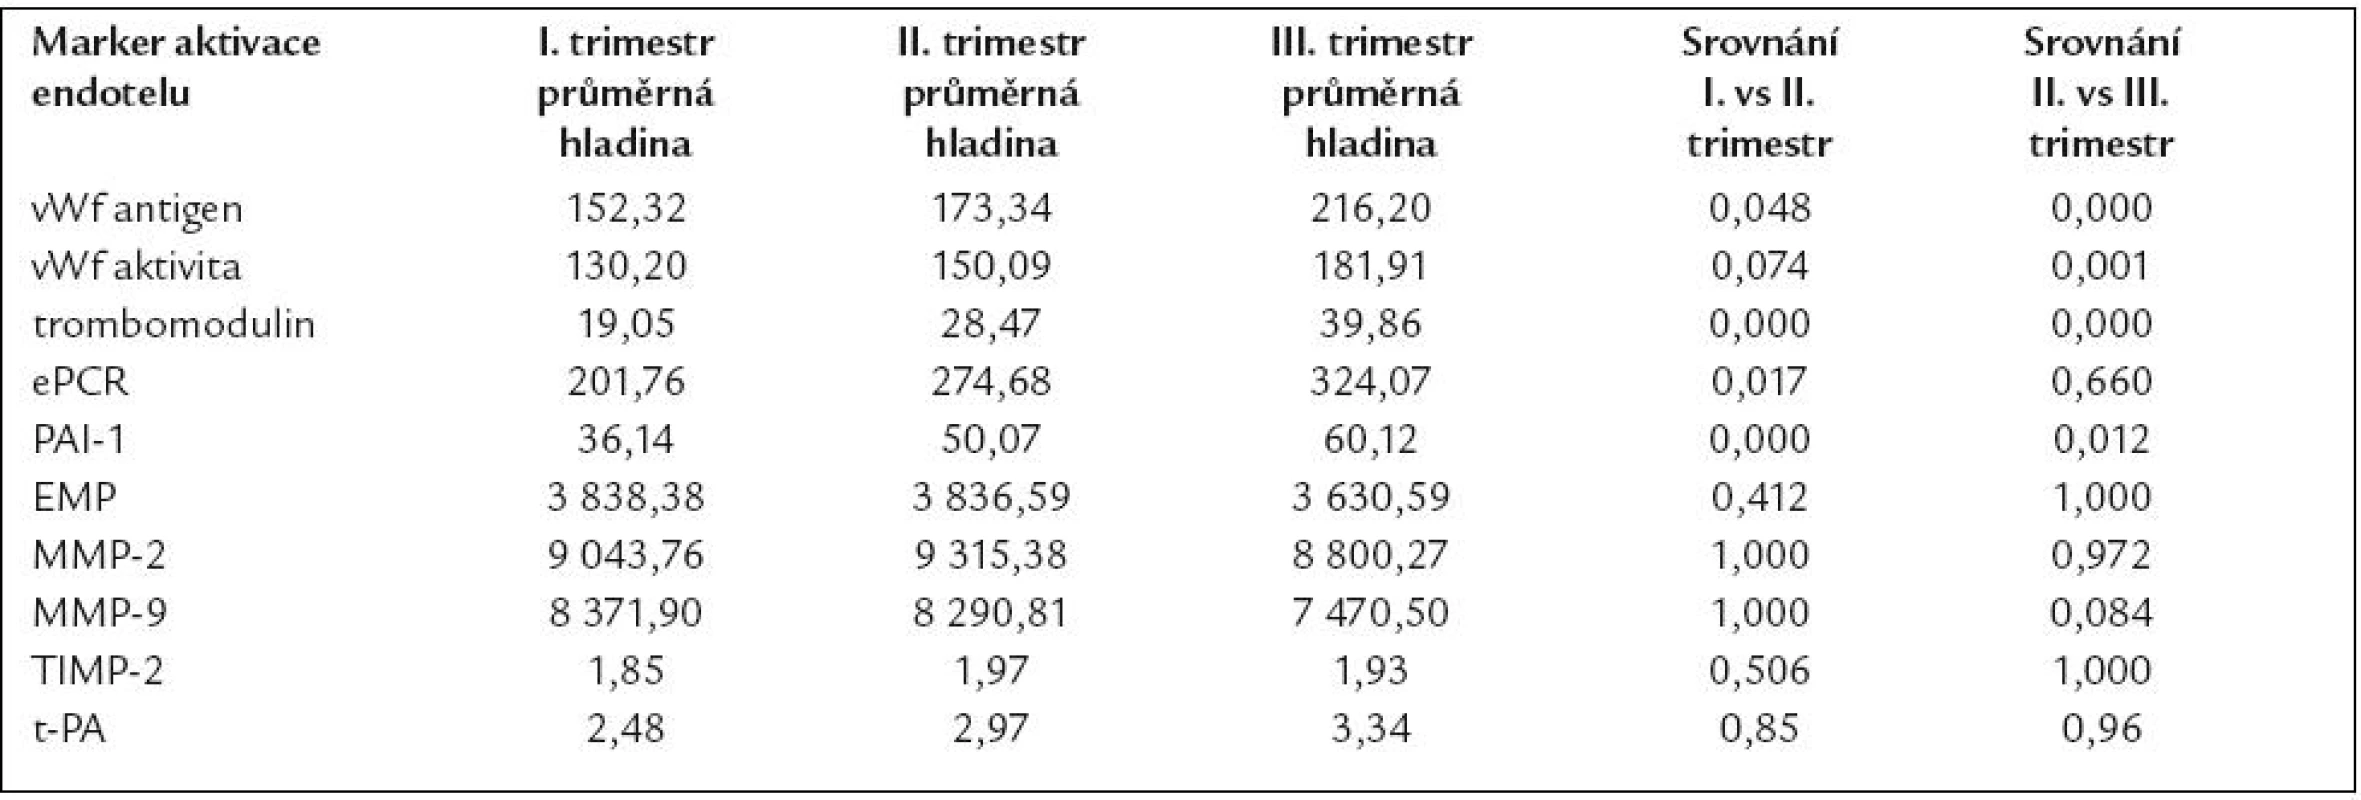 Porovnání hladin markerů aktivace endotelu v jednotlivých trimestrech.